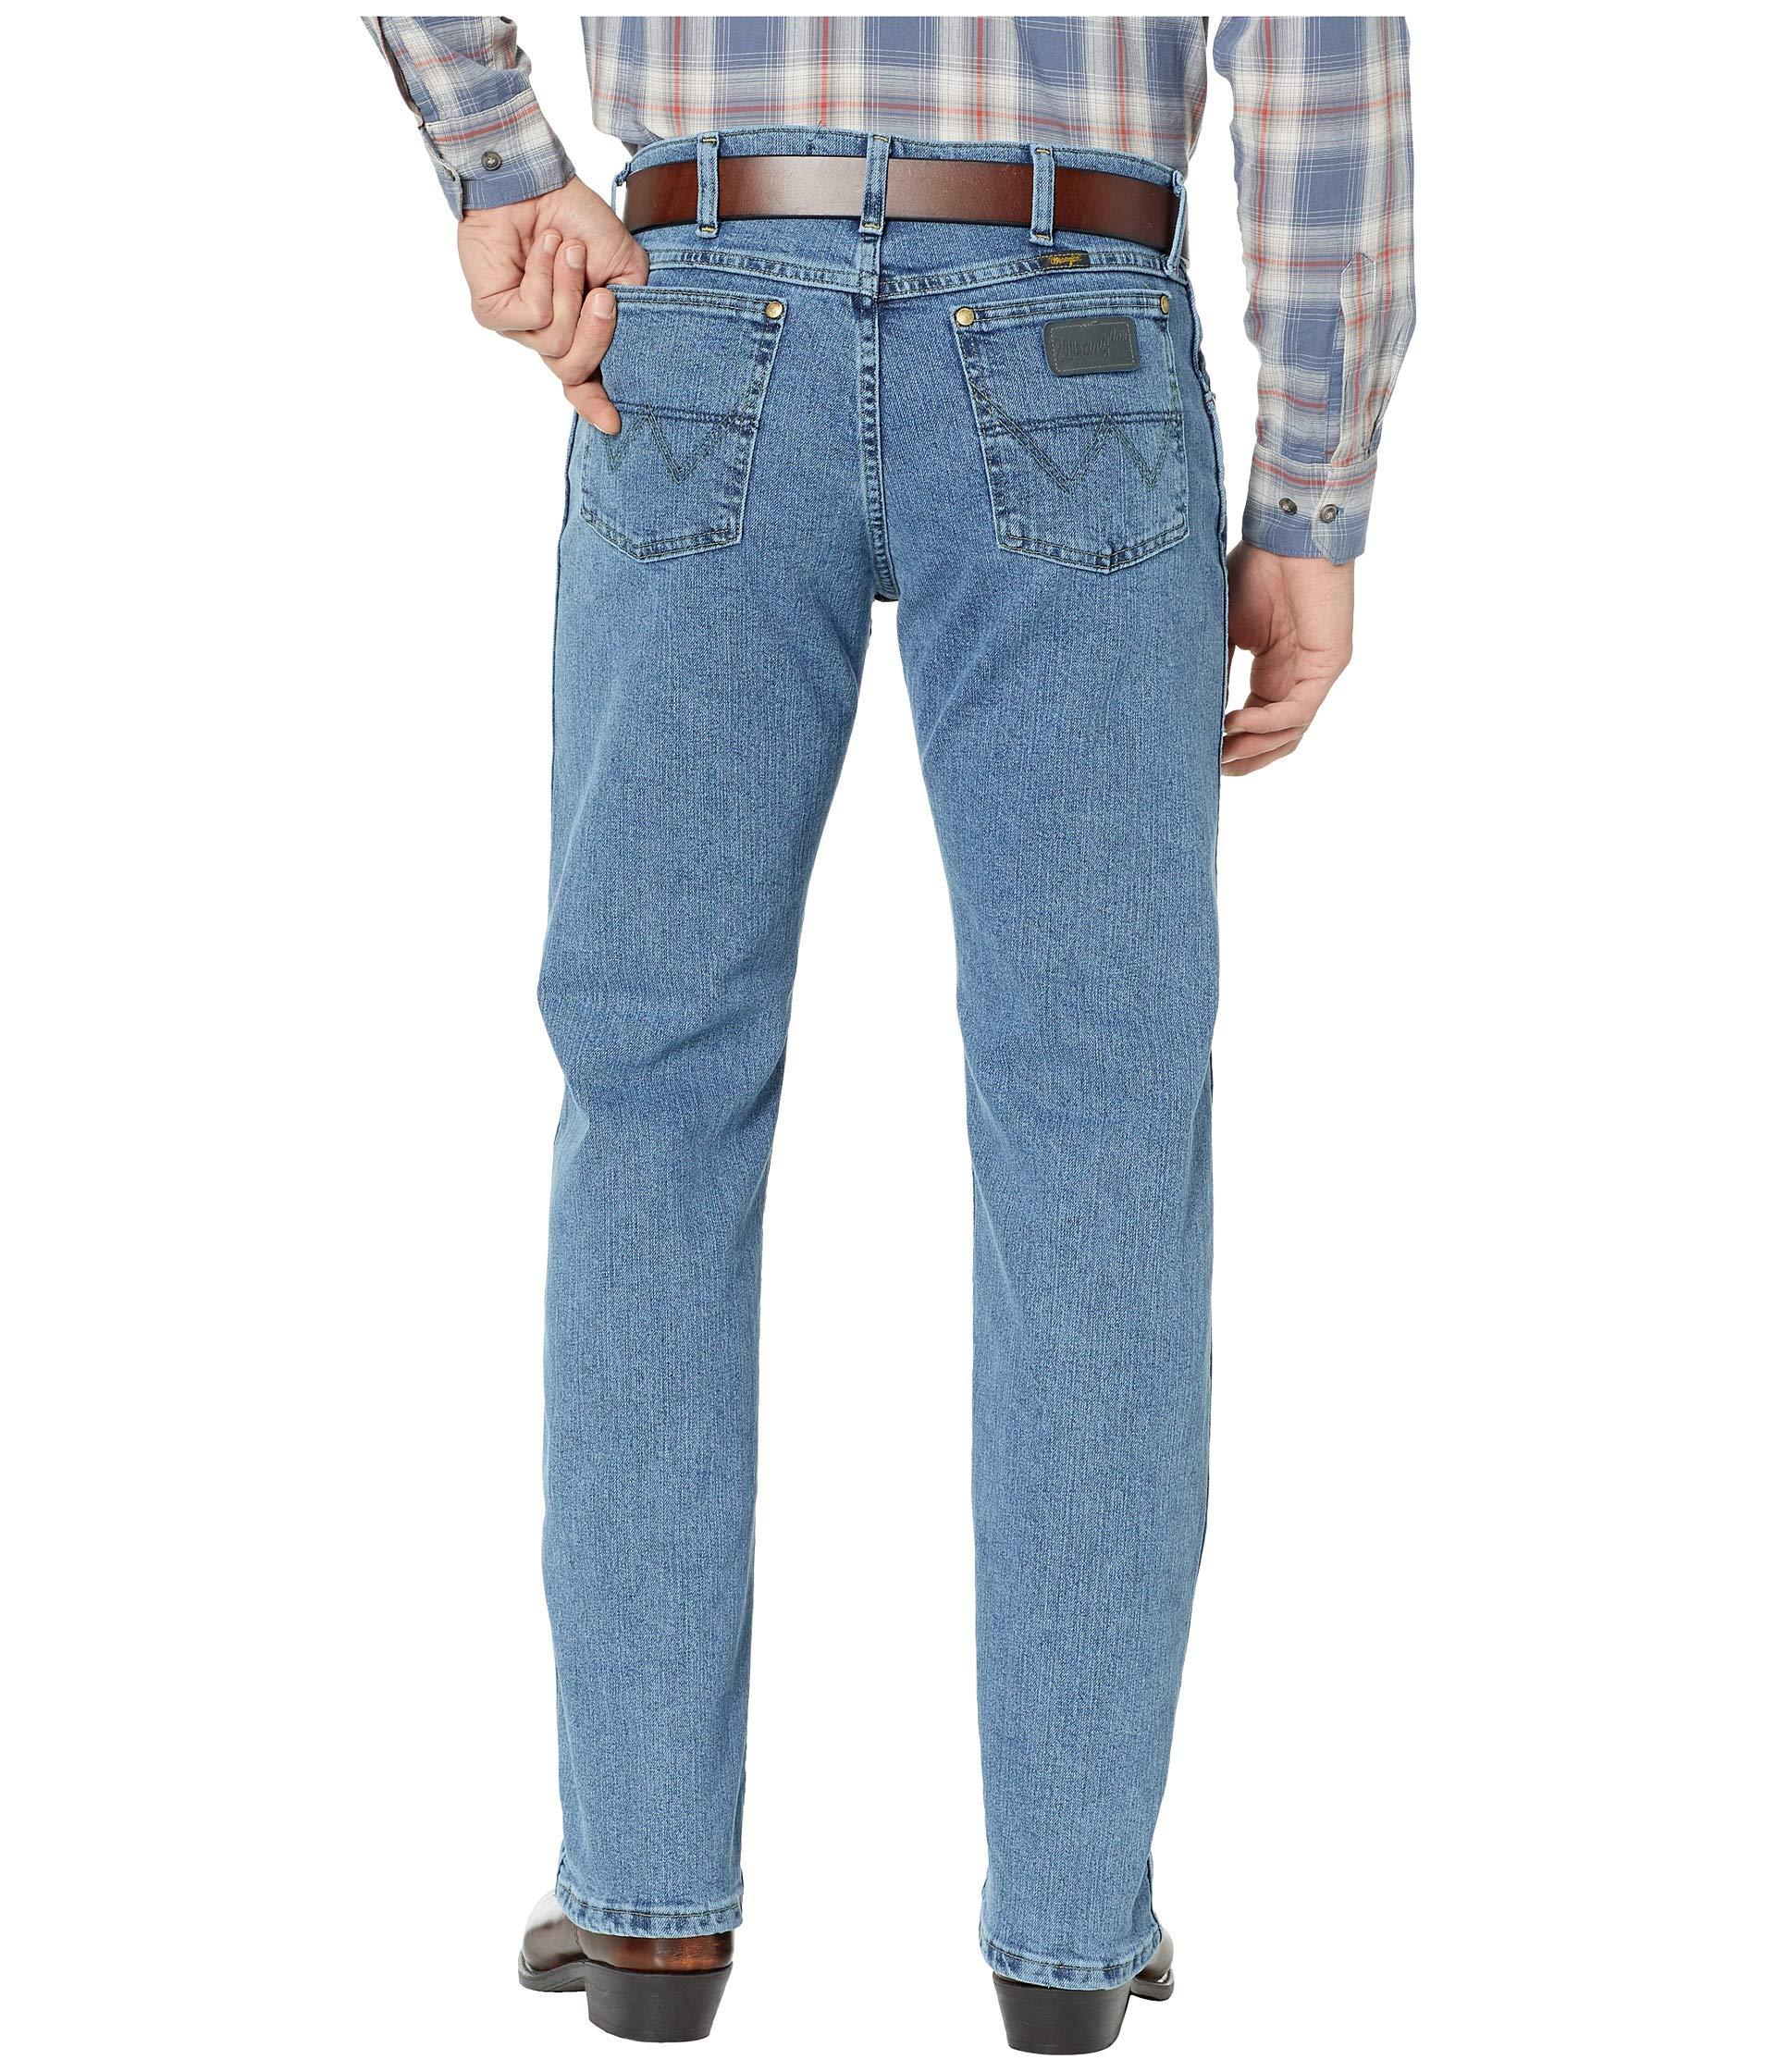 Buy > george strait wrangler jeans > in stock